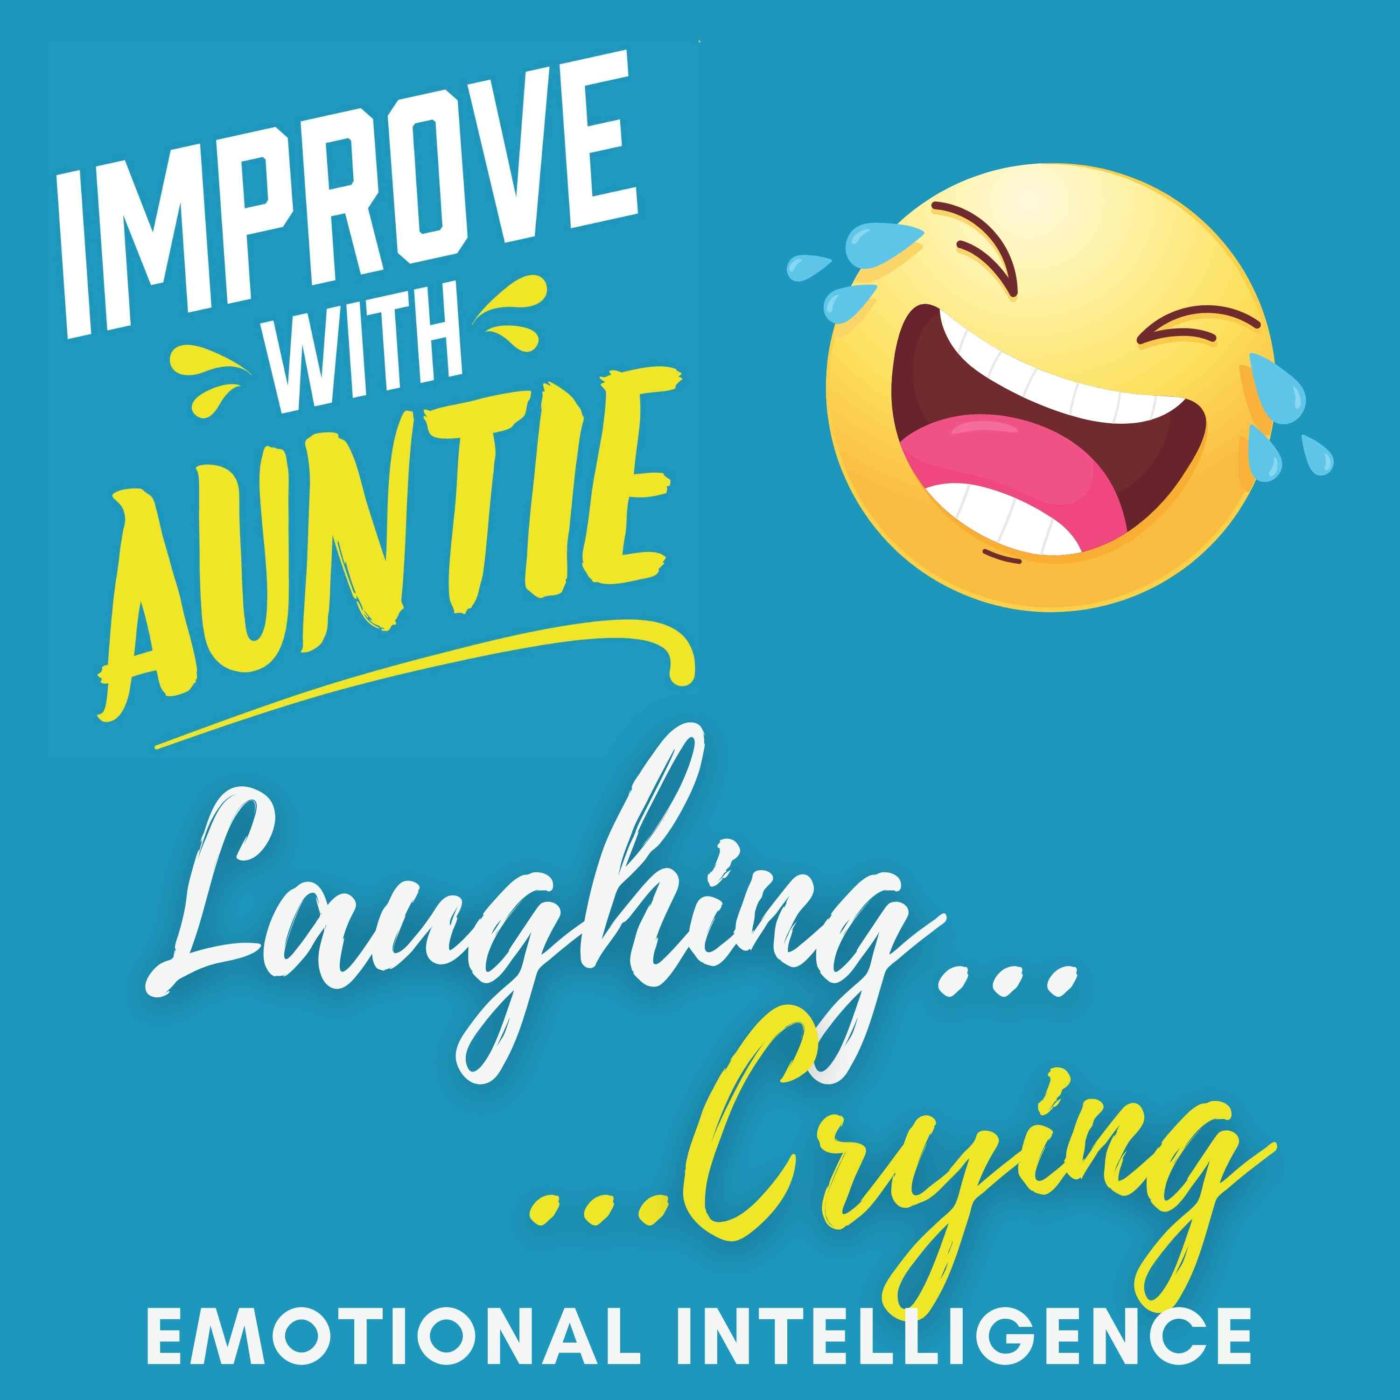 Laughing… Crying: Emotional Intelligence